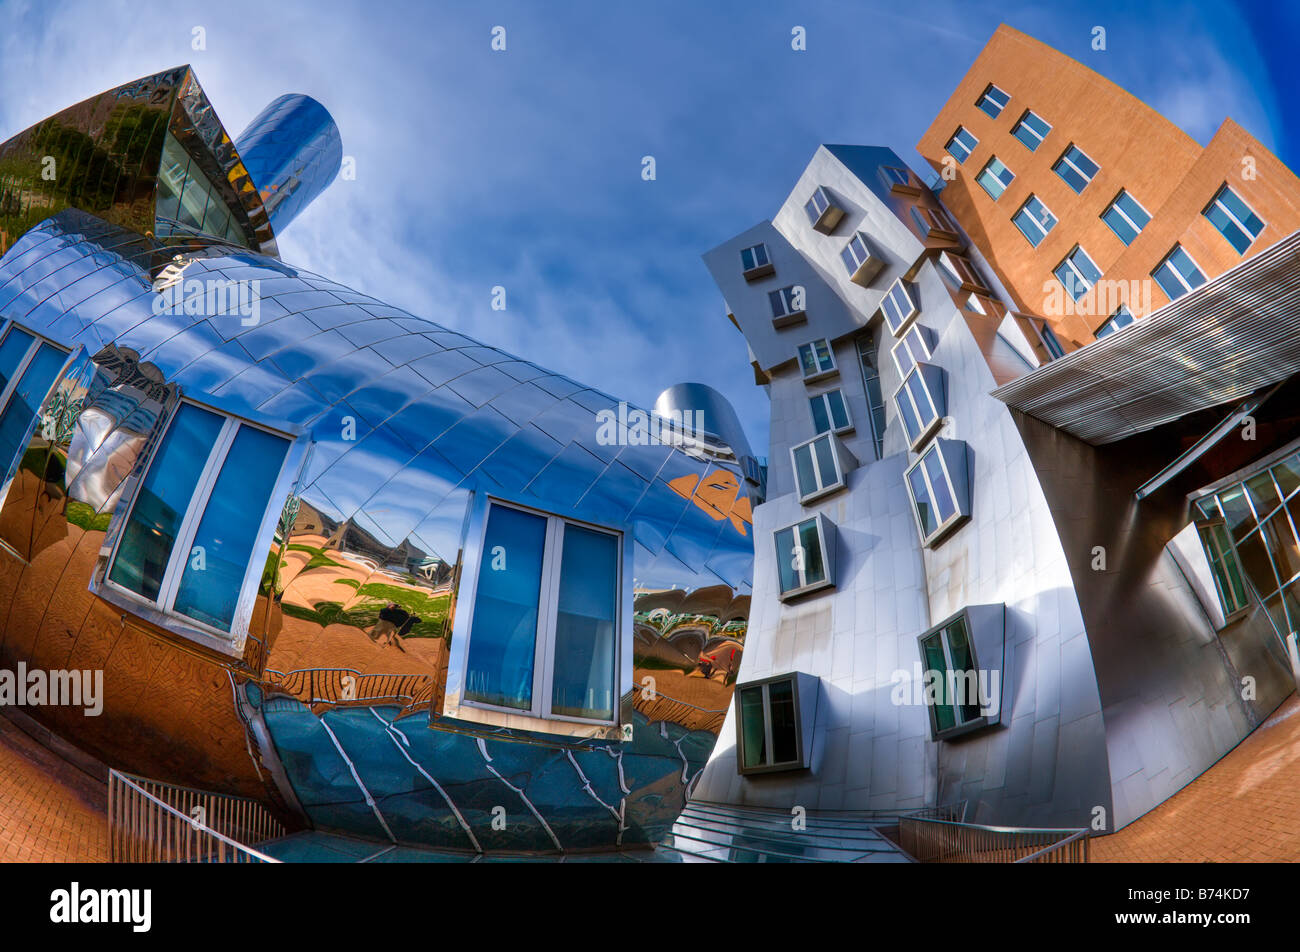 Centre de Stata, campus du MIT, Boston, MA. Bâtiment de Frank Gehry. Image HDR Banque D'Images